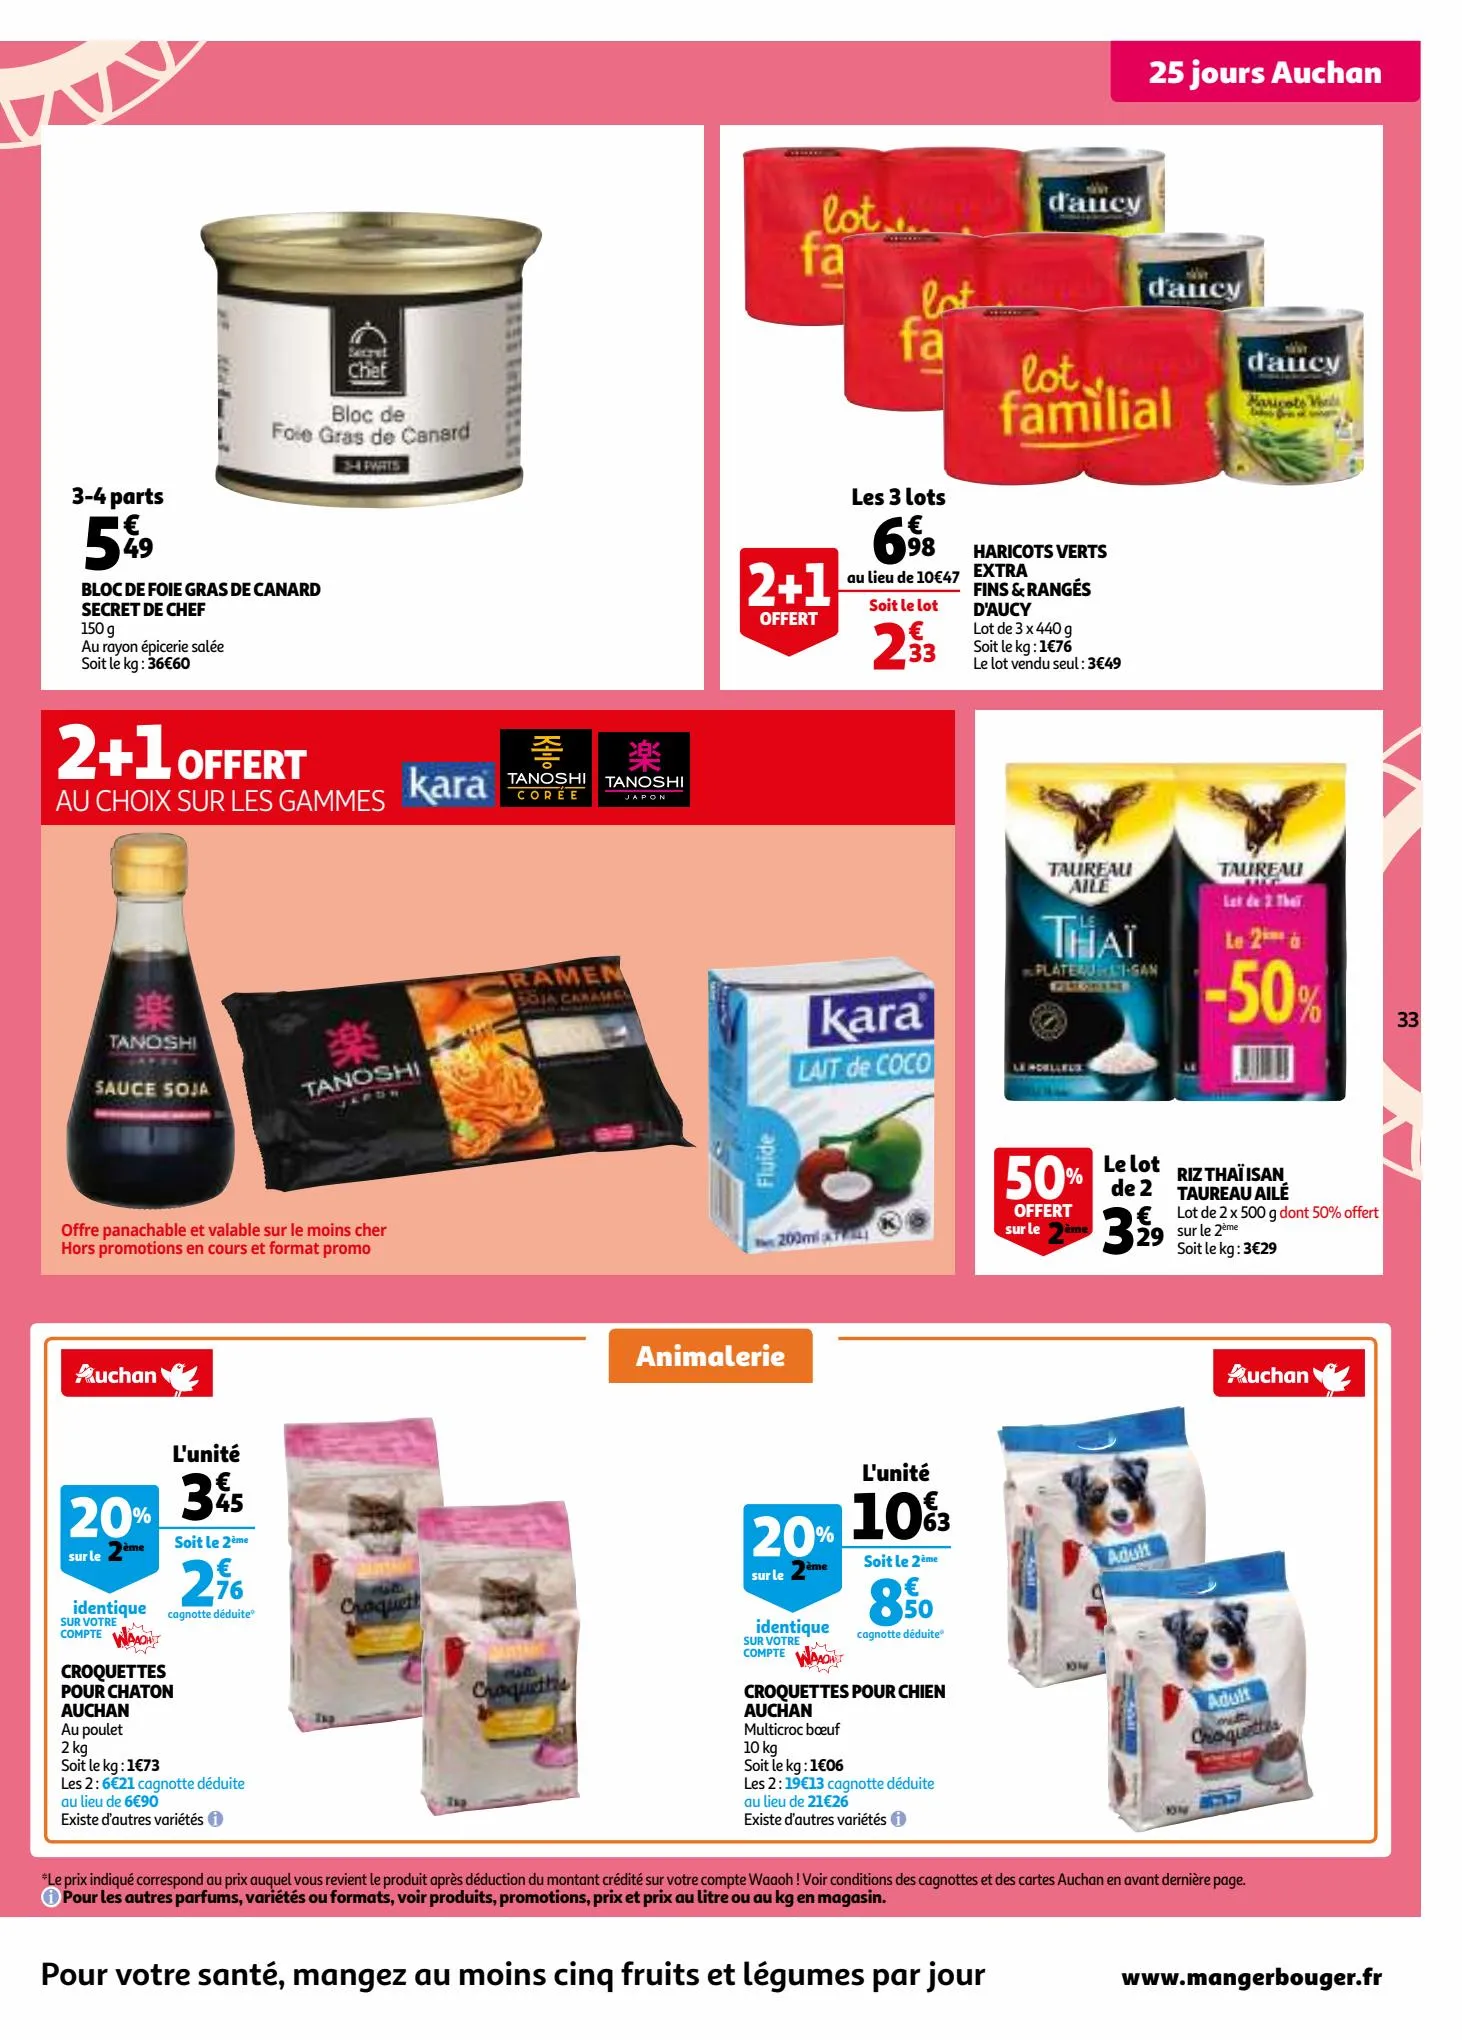 Catalogue 25 jours Auchan, page 00033